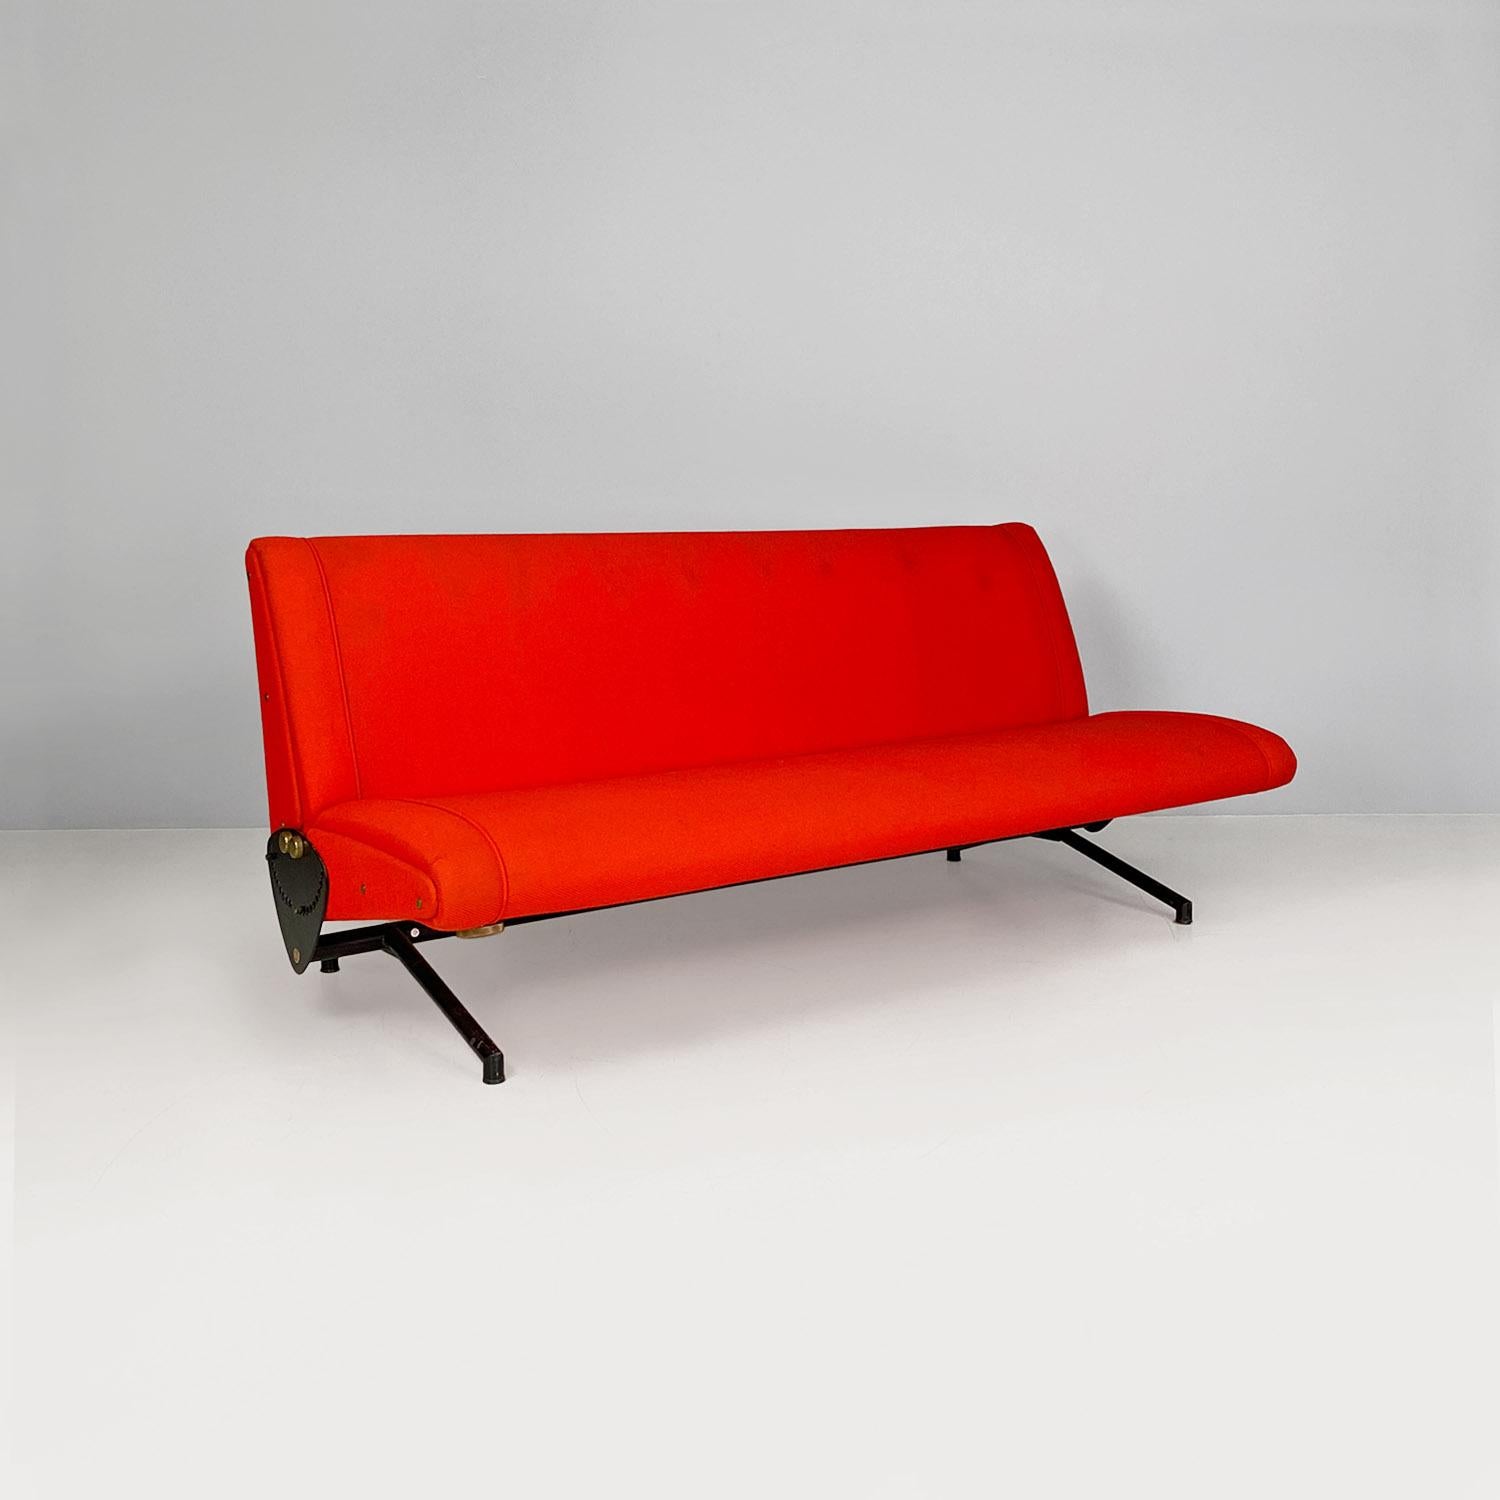 Divano modello D70, con seduta rettangolare imbottita in poliuretano espanso rivestito con tessuto rosso brillante e con struttura di base in metallo verniciato nero. La particolarità di questo divano è di essere ad ali mobili, ovvero il meccanismo